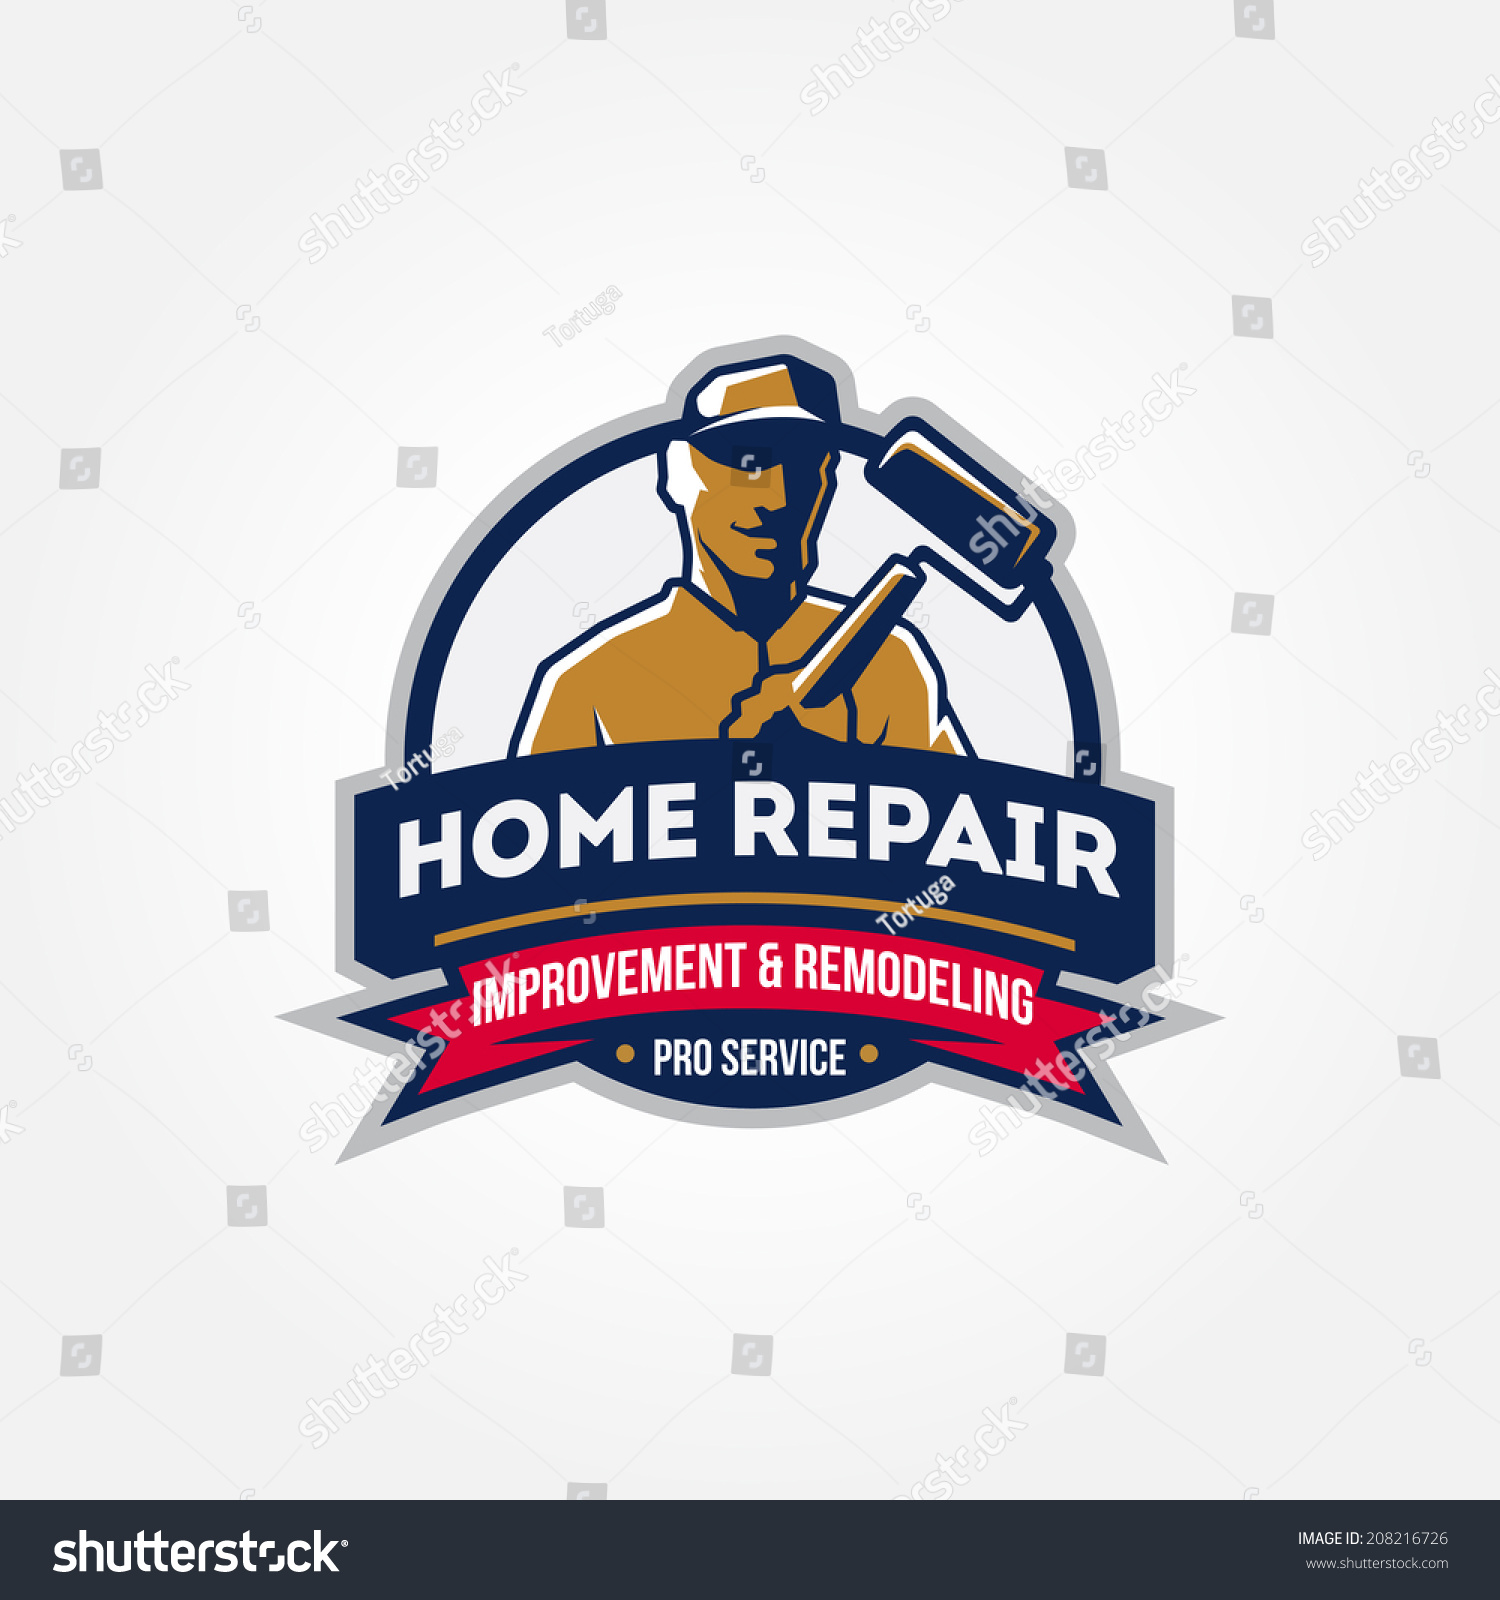 home repair clipart - photo #39